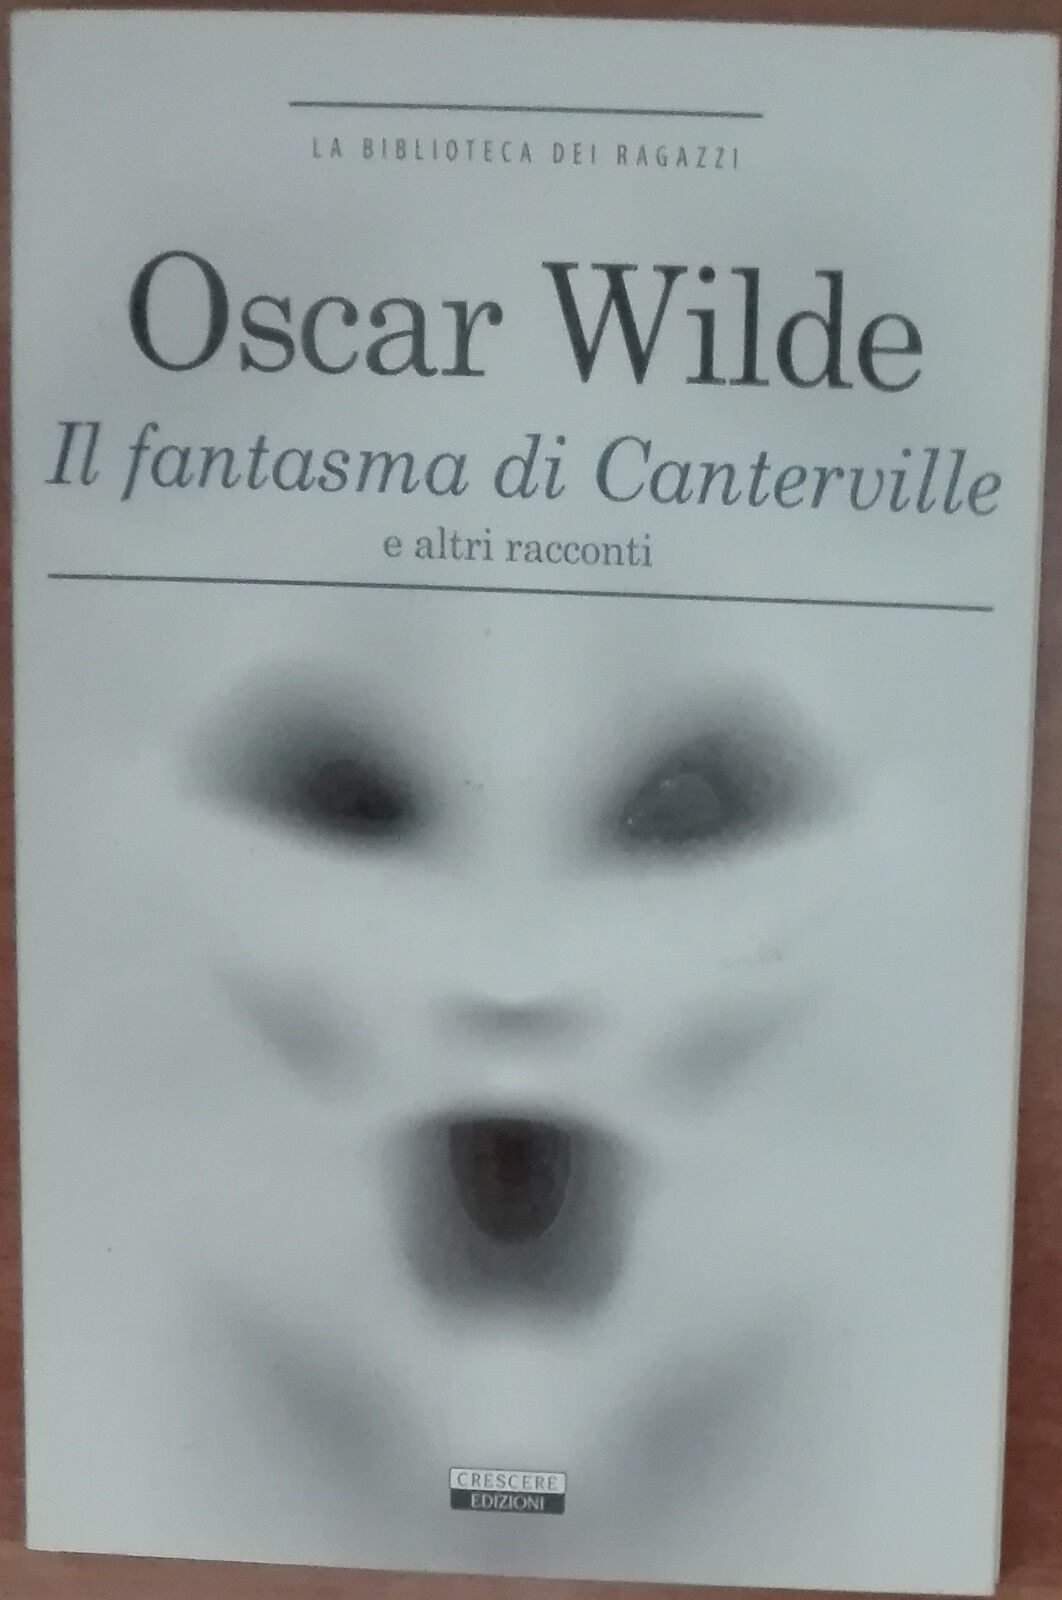 Il fantasma di Canterville - Oscar Wilde - Crescere edizioni,2013 - A libro usato